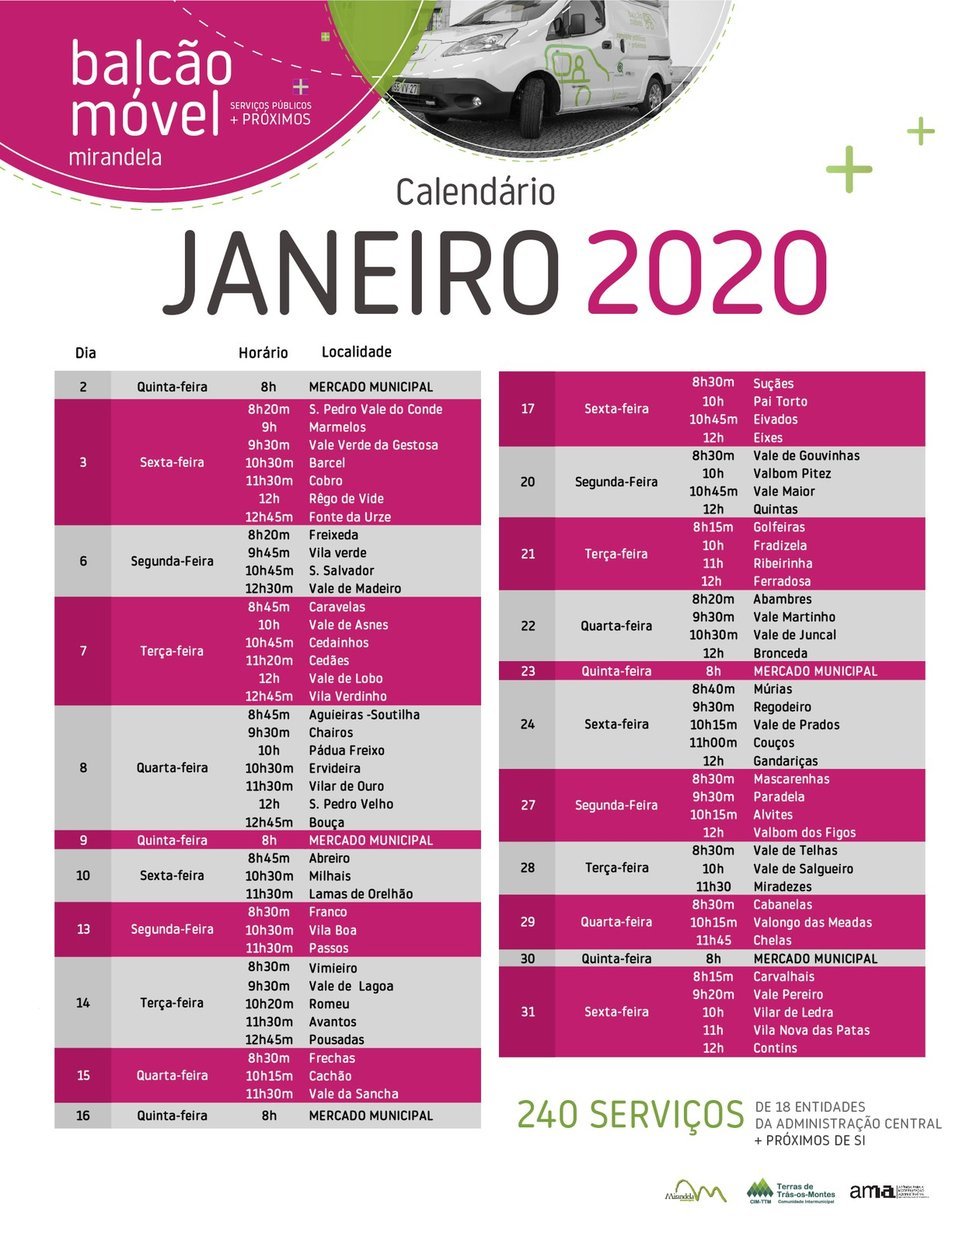 Balcão Móvel - Janeiro 2020